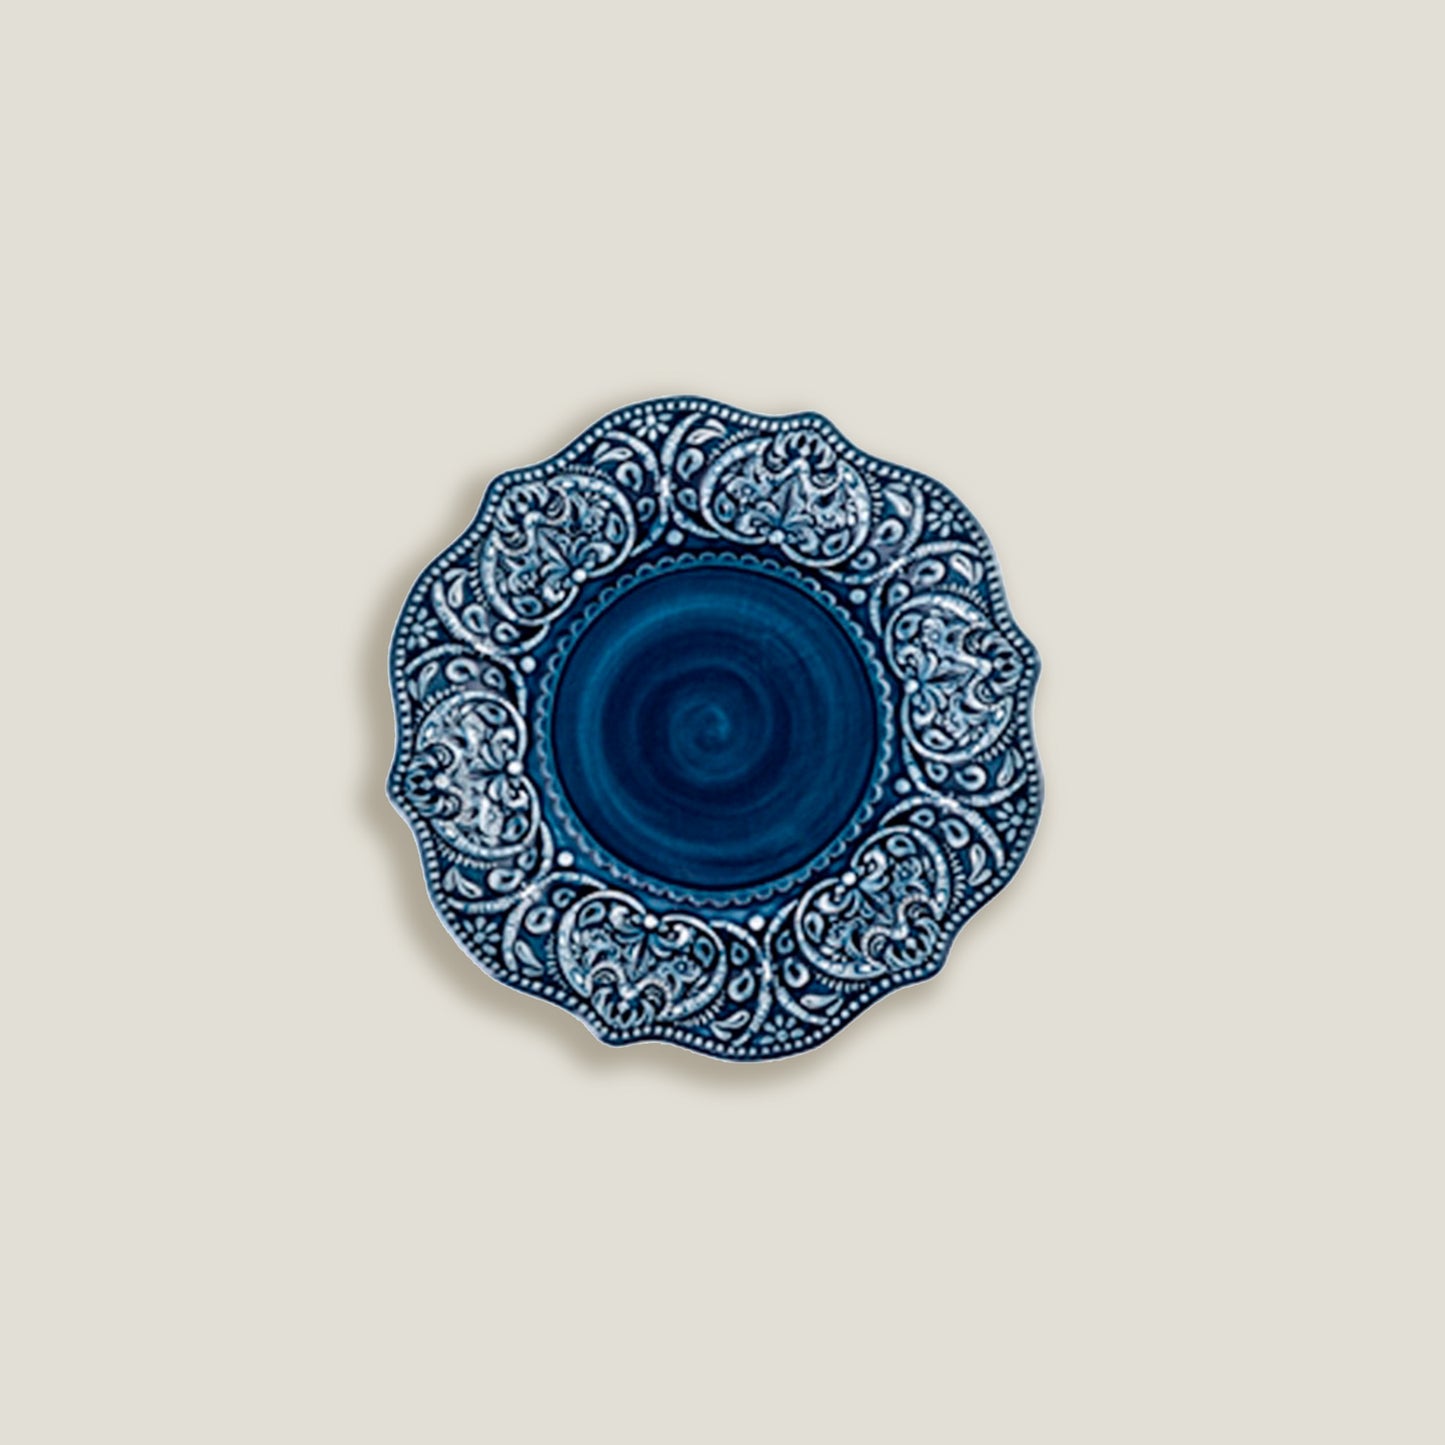 Blue Embossed Dinner Plates